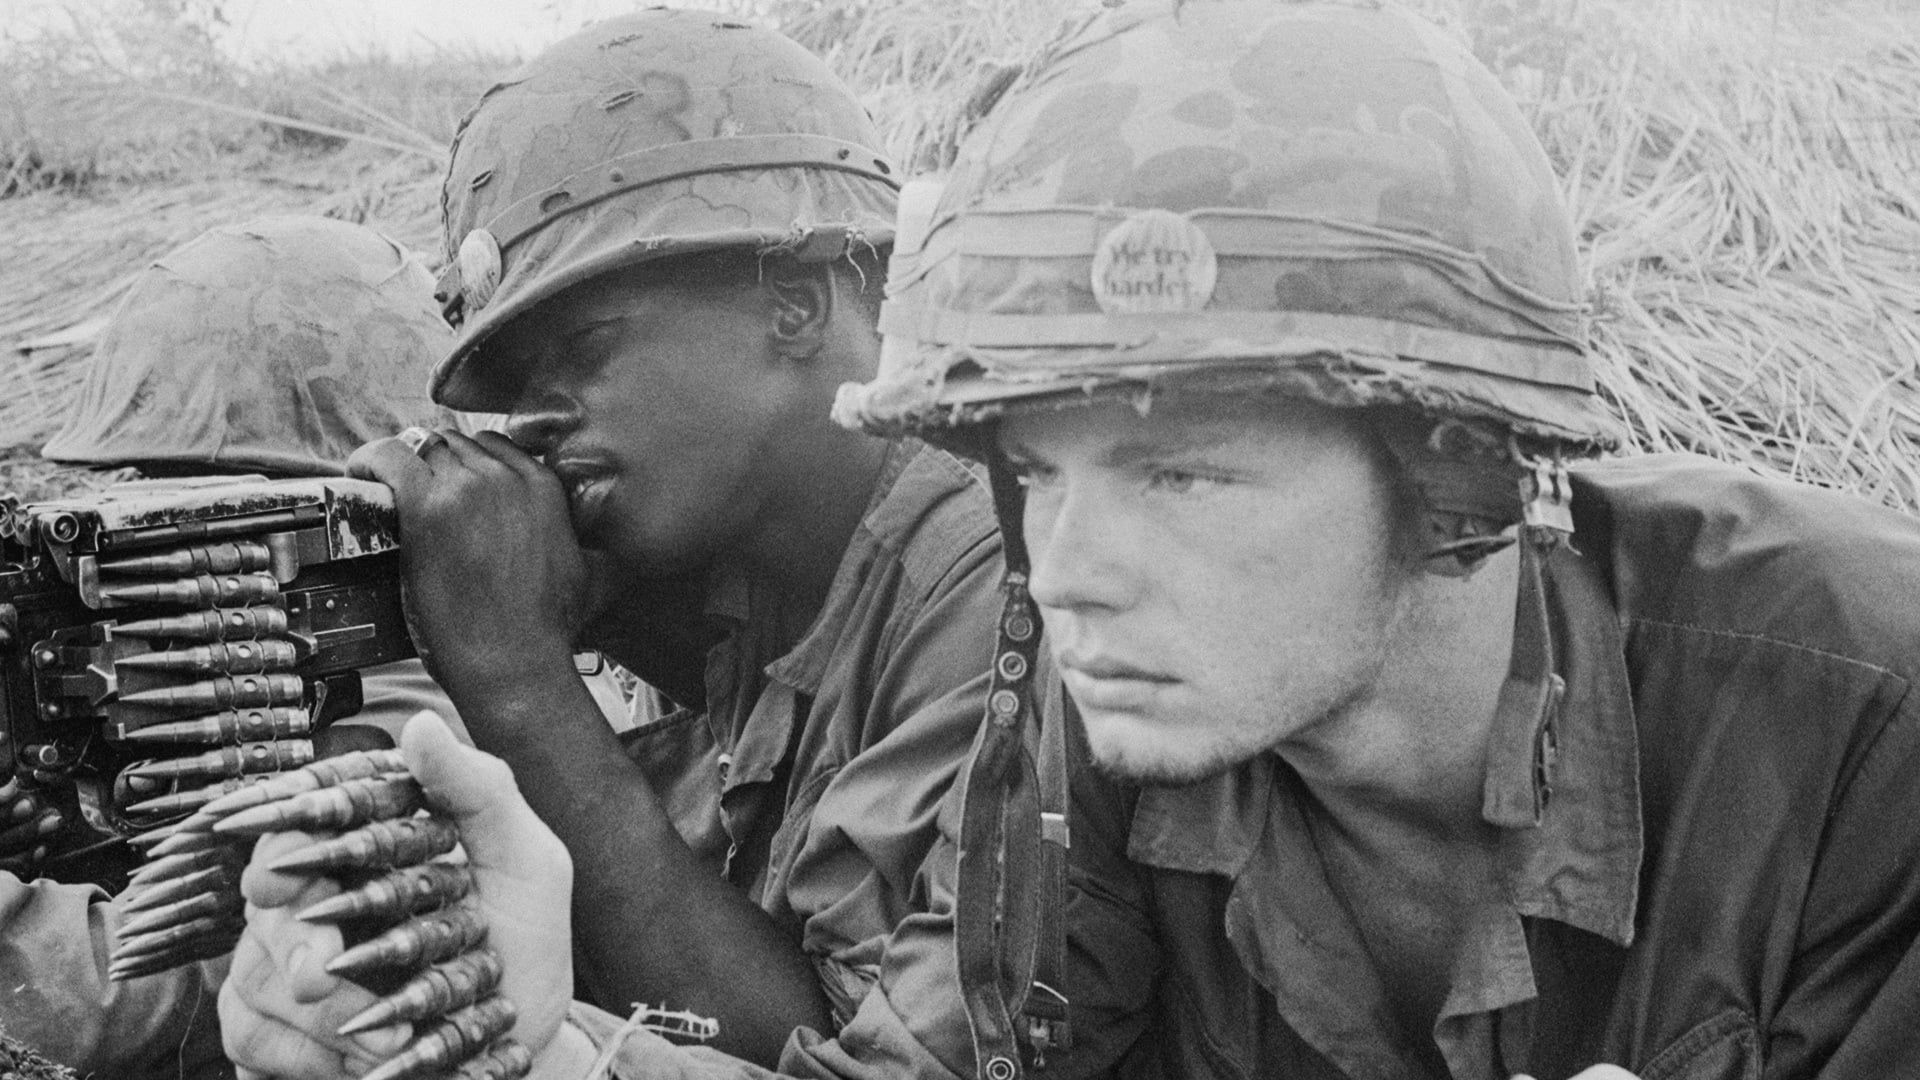 The Vietnam War background